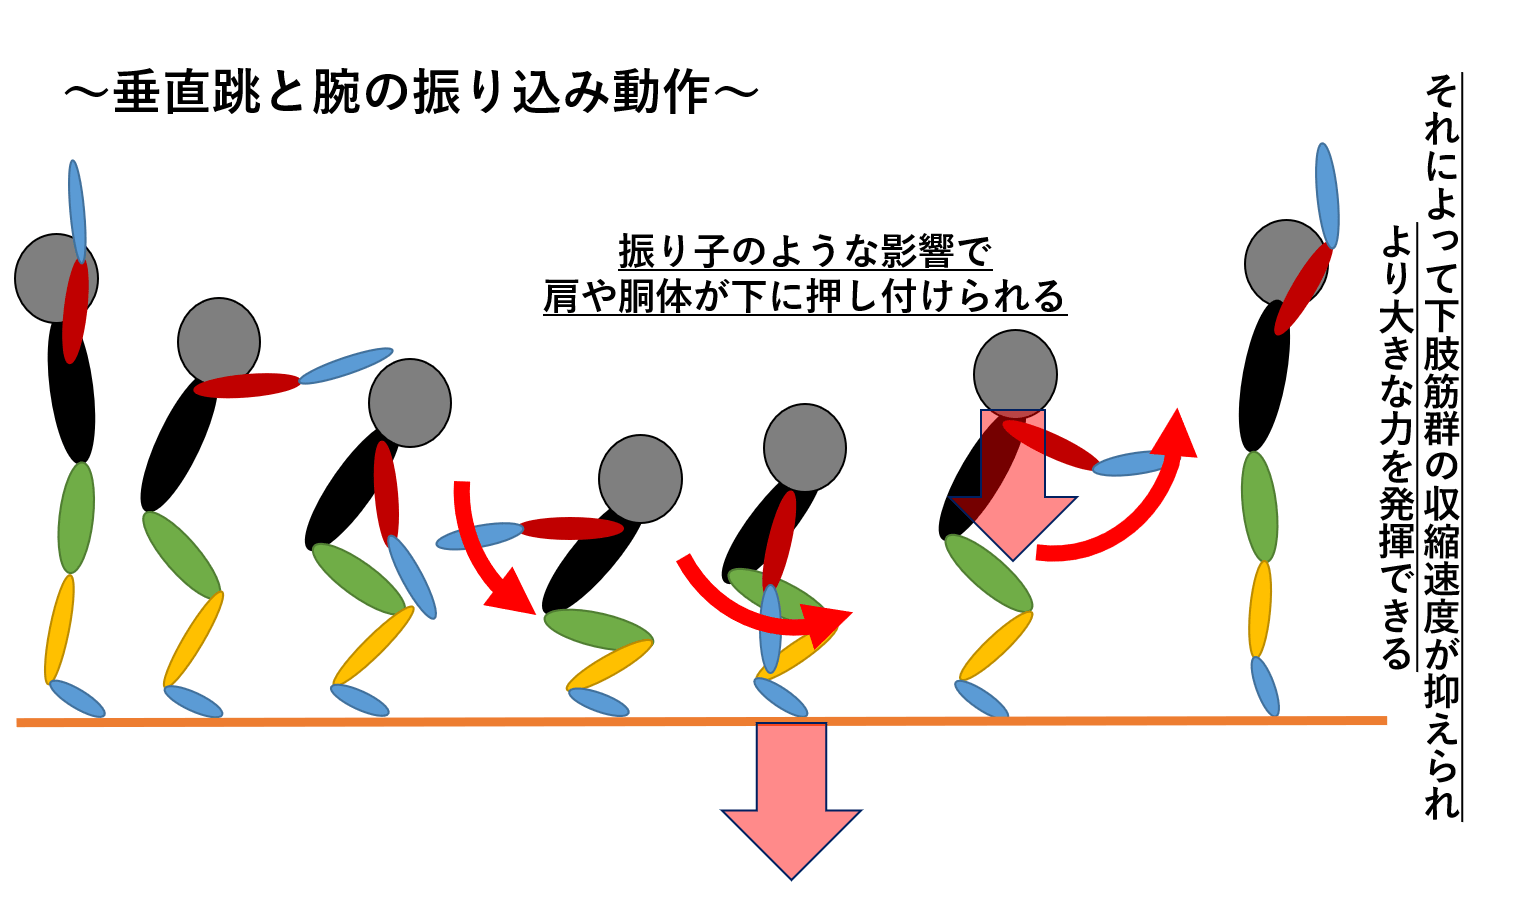 垂直跳のバイオメカニクス 垂直跳のコツ 陸上競技の理論と実践 Sprint Conditioning